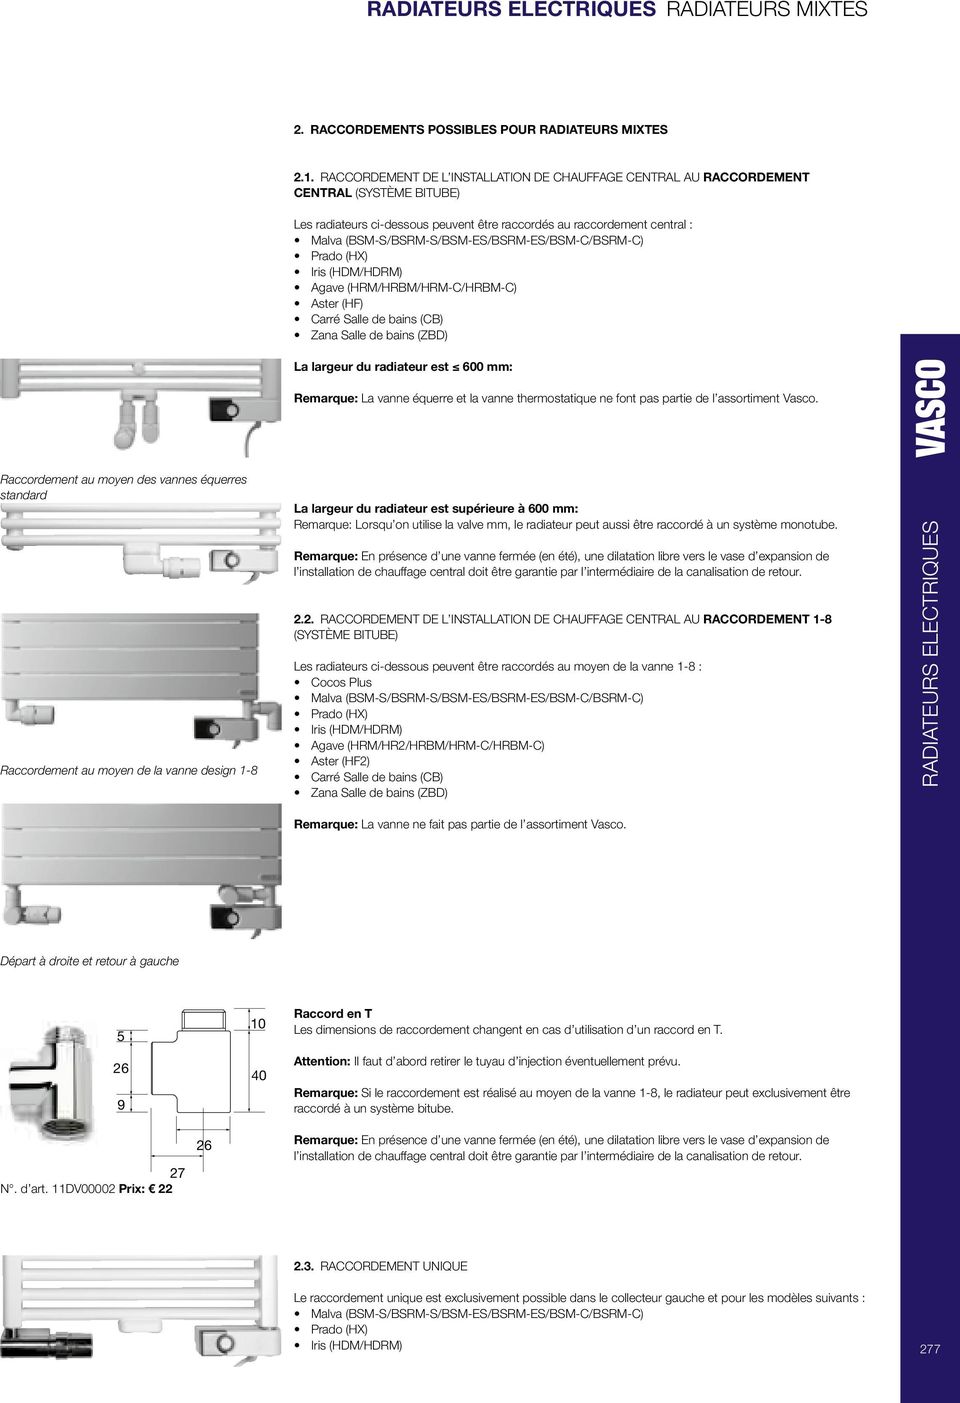 /BSRM-ES /BSM-C /BSRM-C ) Prado (HX ) Iris (HDM /HDRM ) Agave (HRM /HRBM /HRM-C /HRBM-C ) Aster (HF ) Carré Salle de bains (CB ) Zana Salle de bains (ZBD ) La largeur du radiateur est 600 mm: